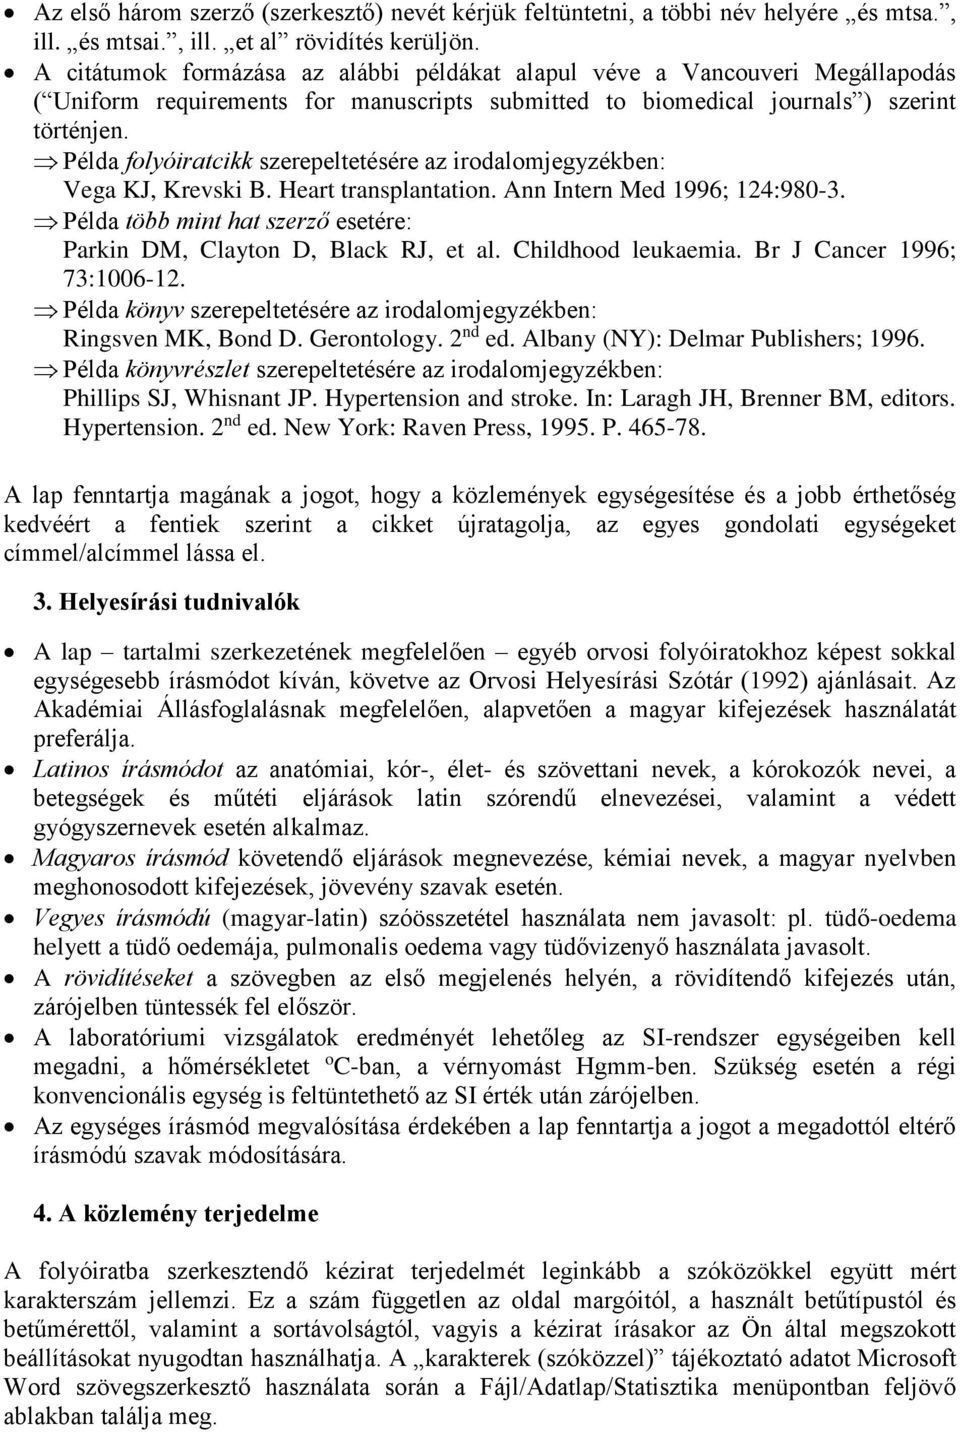 Példa folyóiratcikk szerepeltetésére az irodalomjegyzékben: Vega KJ, Krevski B. Heart transplantation. Ann Intern Med 1996; 124:980-3.